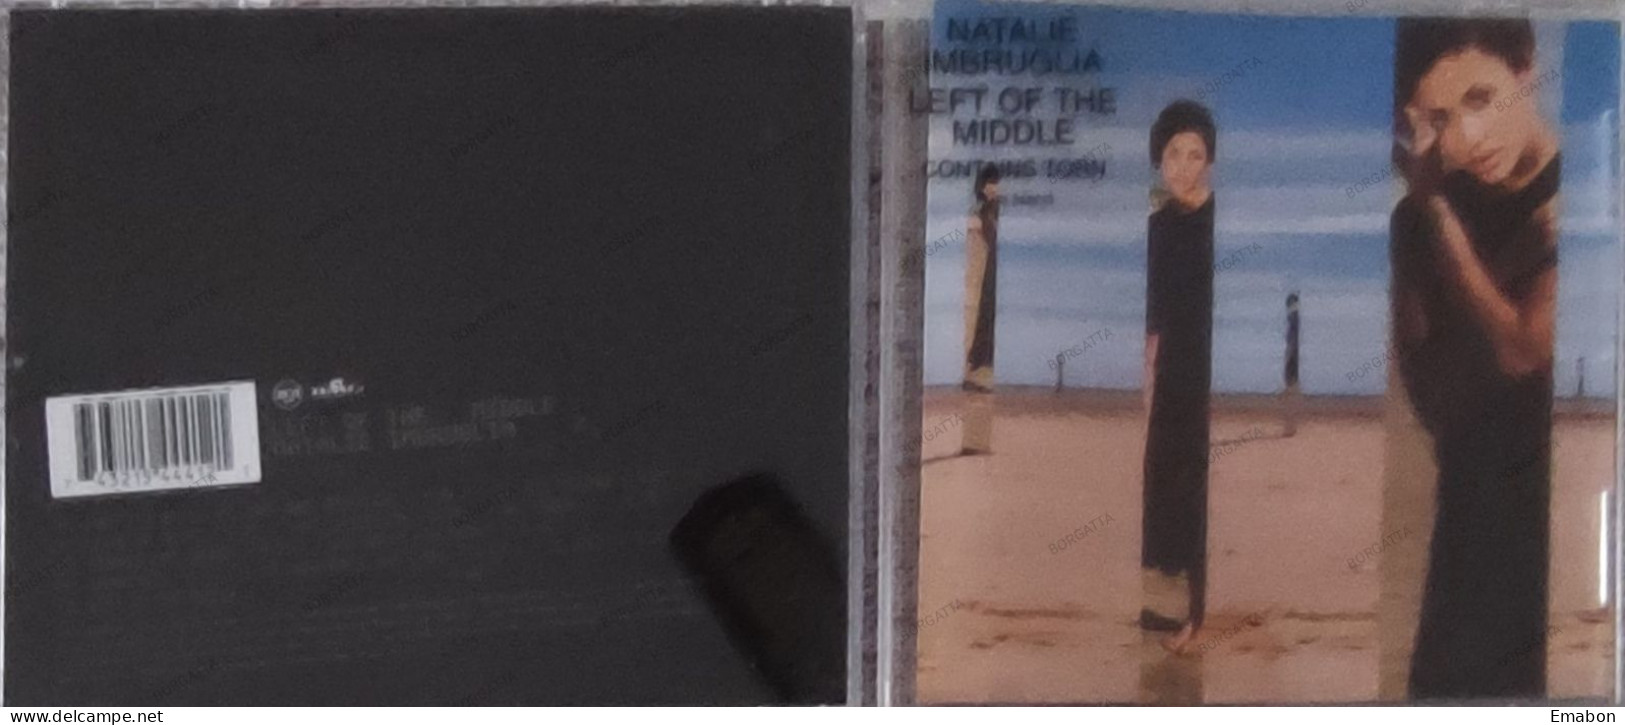 BORGATTA - ROCK - Cd NATALIE IMBRUGLIA - LEFT OF THE MIDDLE - RCA 1997 -  USATO In Buono Stato - Rock